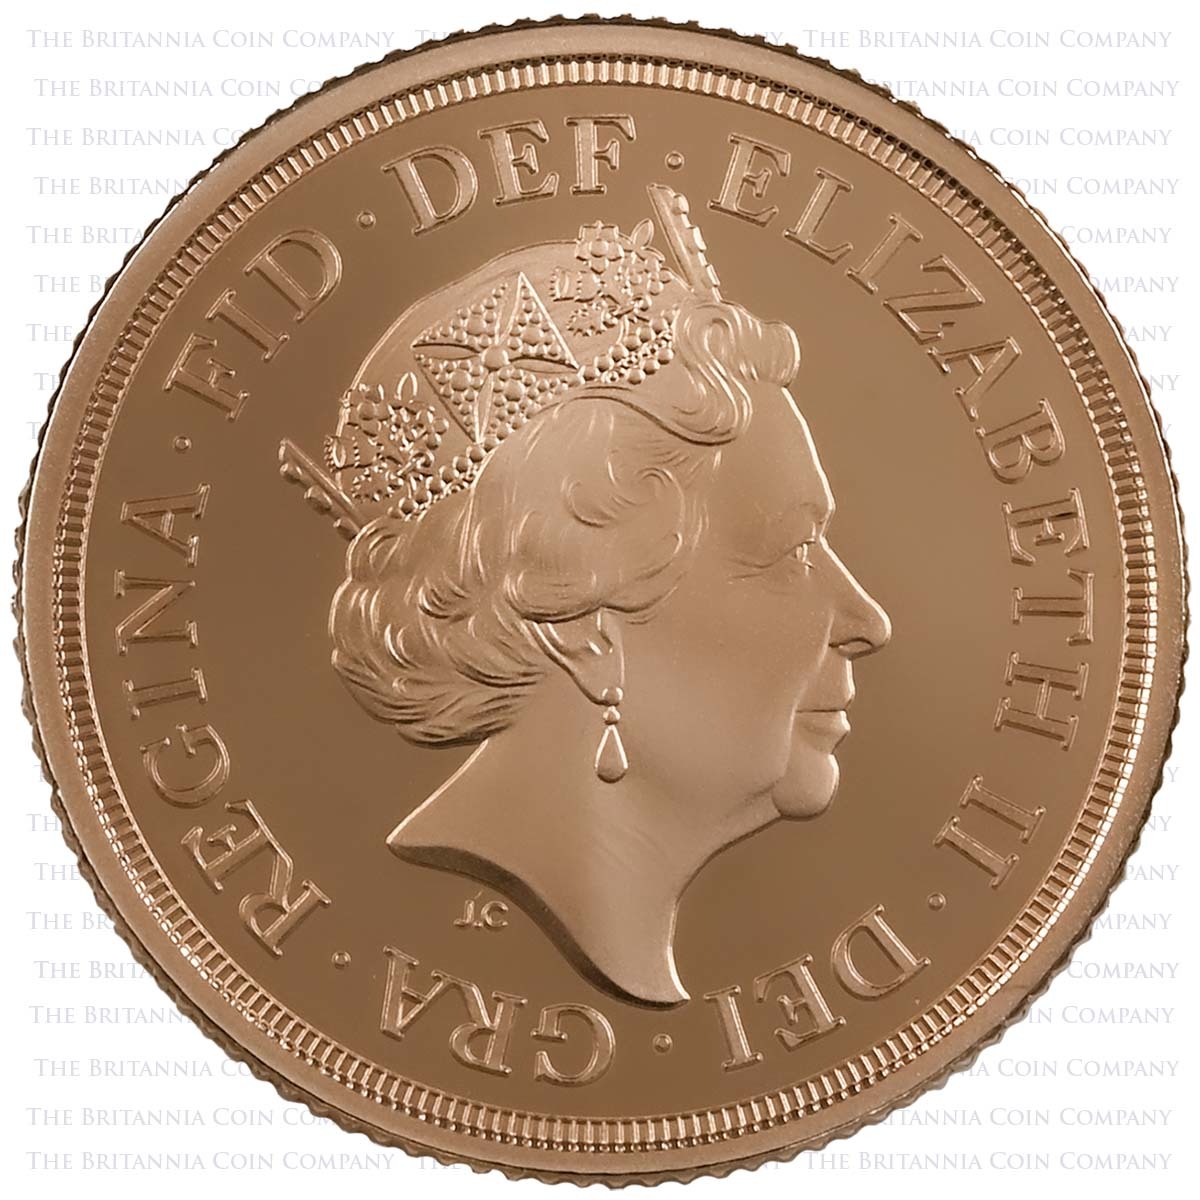 SV322 2022 Elizabeth II 3 Coin Gold Proof Sovereign Set Platinum Jubilee Obverse